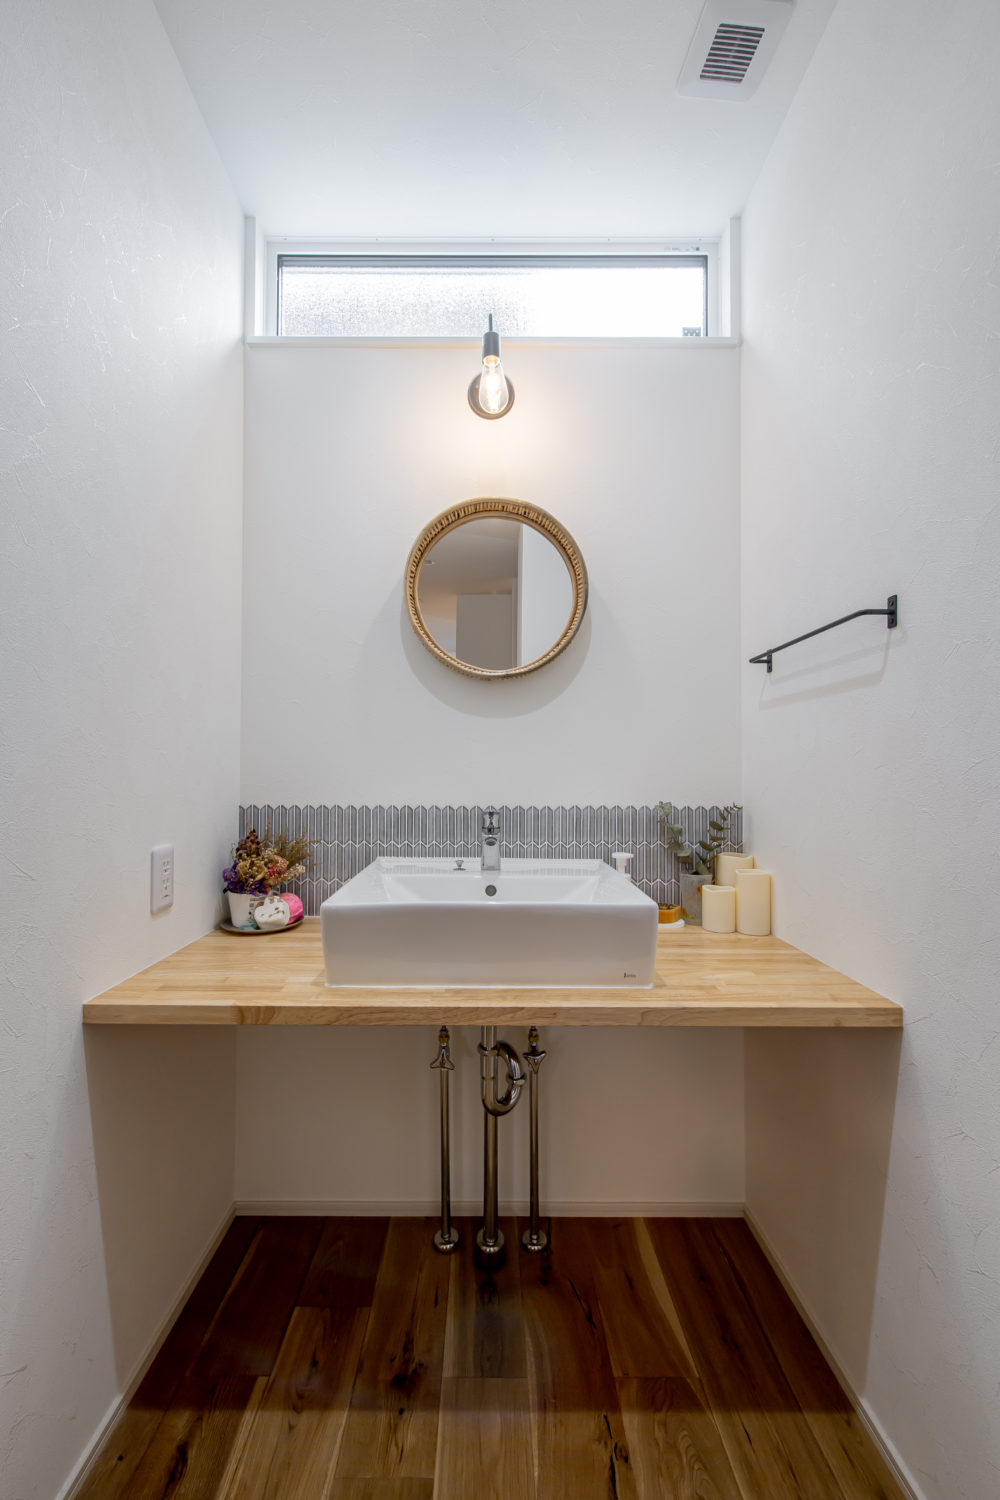 アイデザインホーム
注文住宅
広島県広島市
装飾をできるだけ省いたシンプルな造作洗面